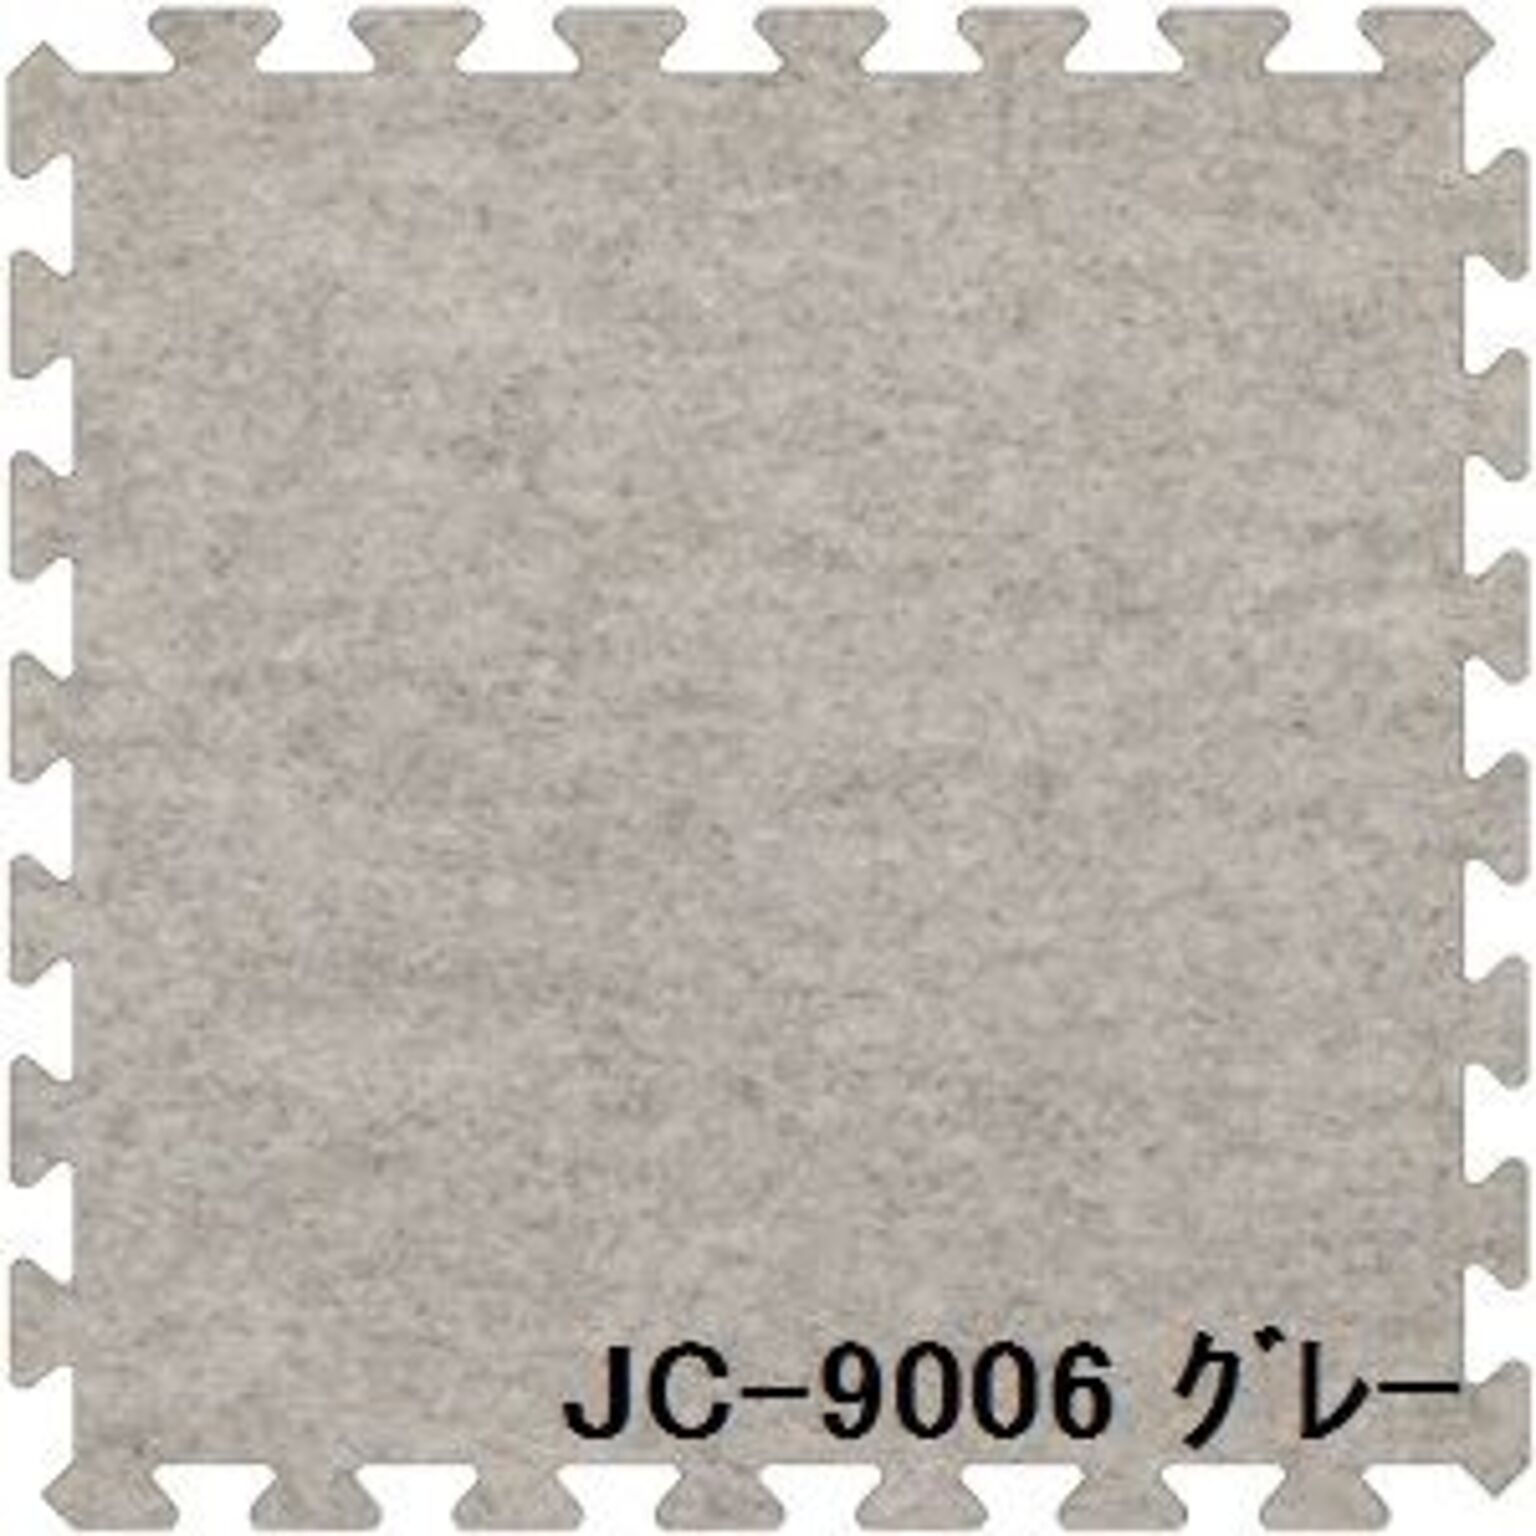 ジョイントカーペット JC-90 6枚セット 色 ライトブルー サイズ 厚15mm